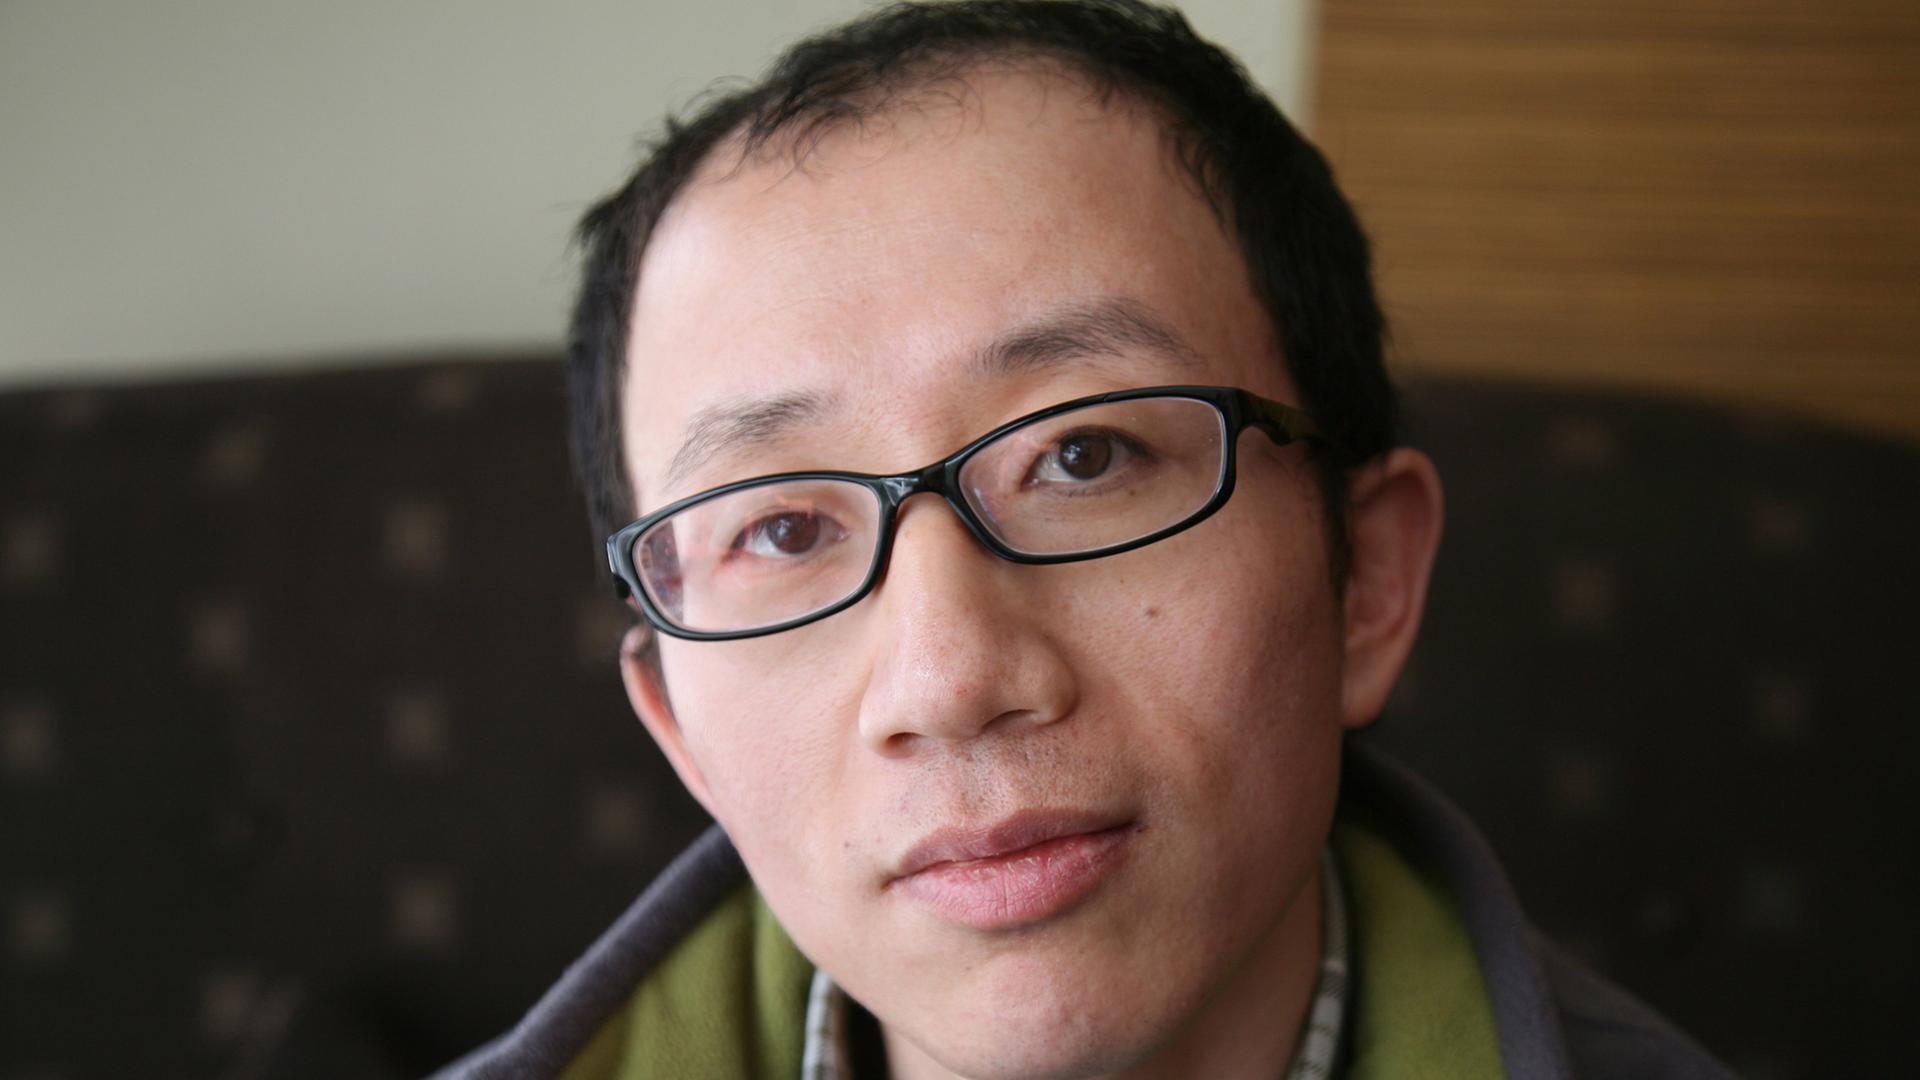 Der chinesische Dissident Hu Jia auf einer Aufnahme aus dem Jahr 2012.